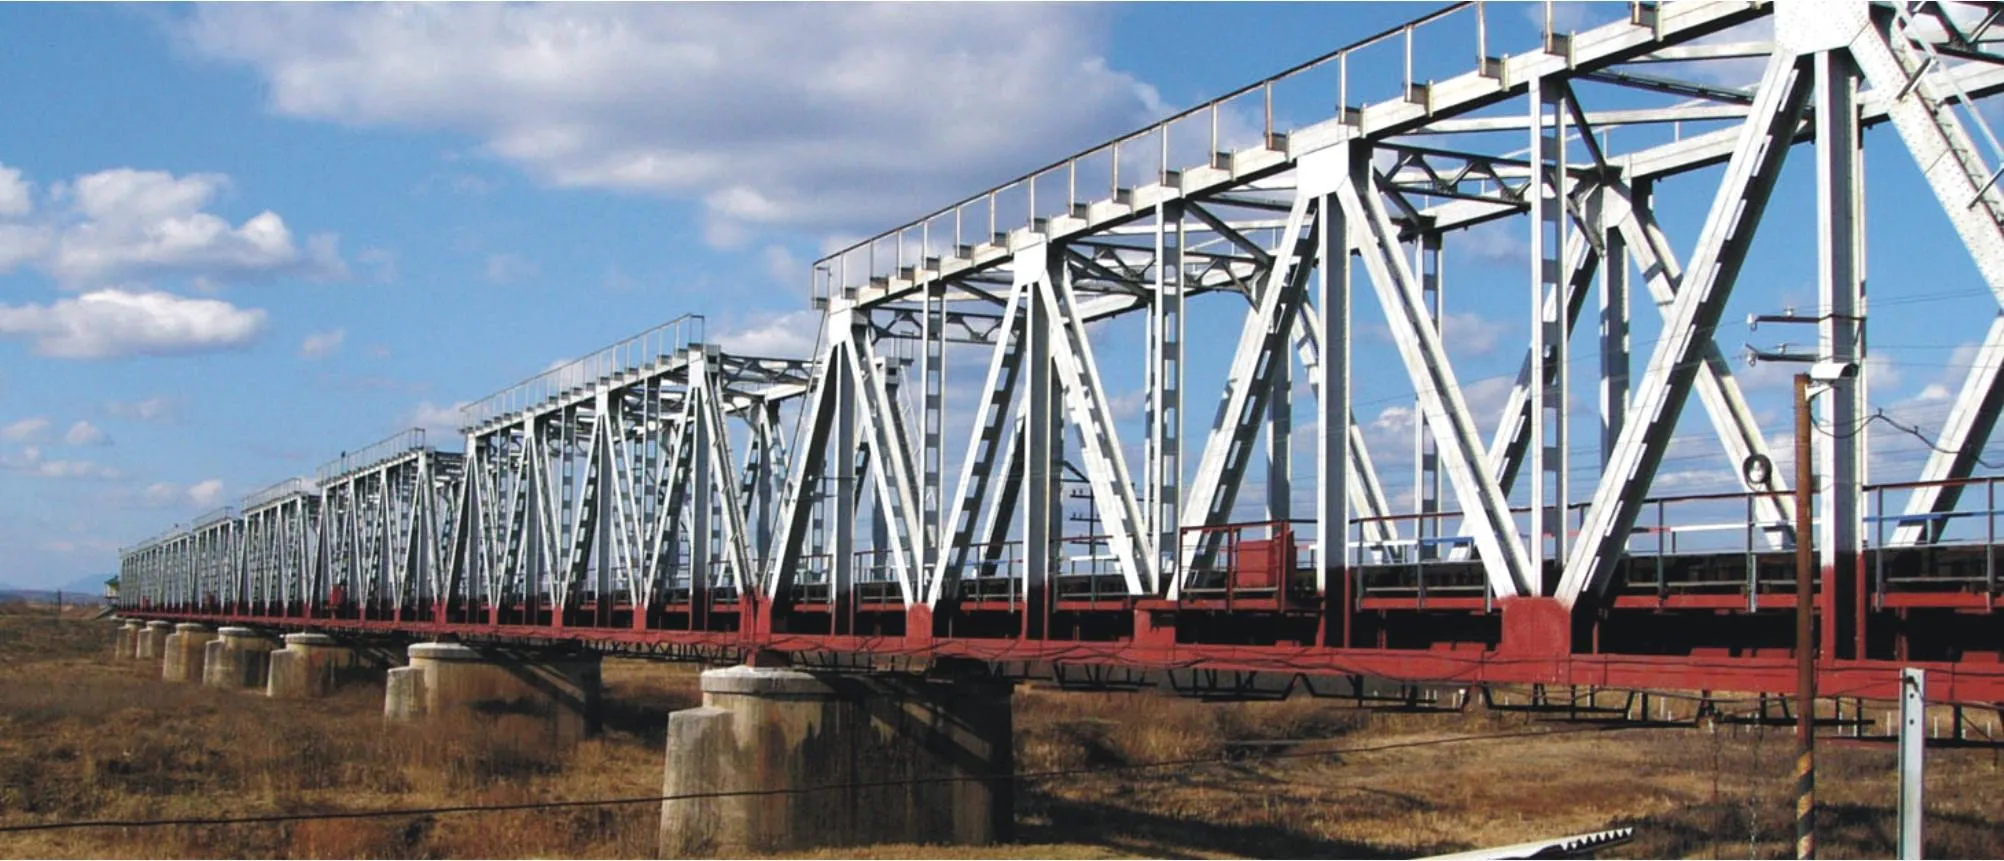 Пролетные конструкции мостов и трубопроводов#10